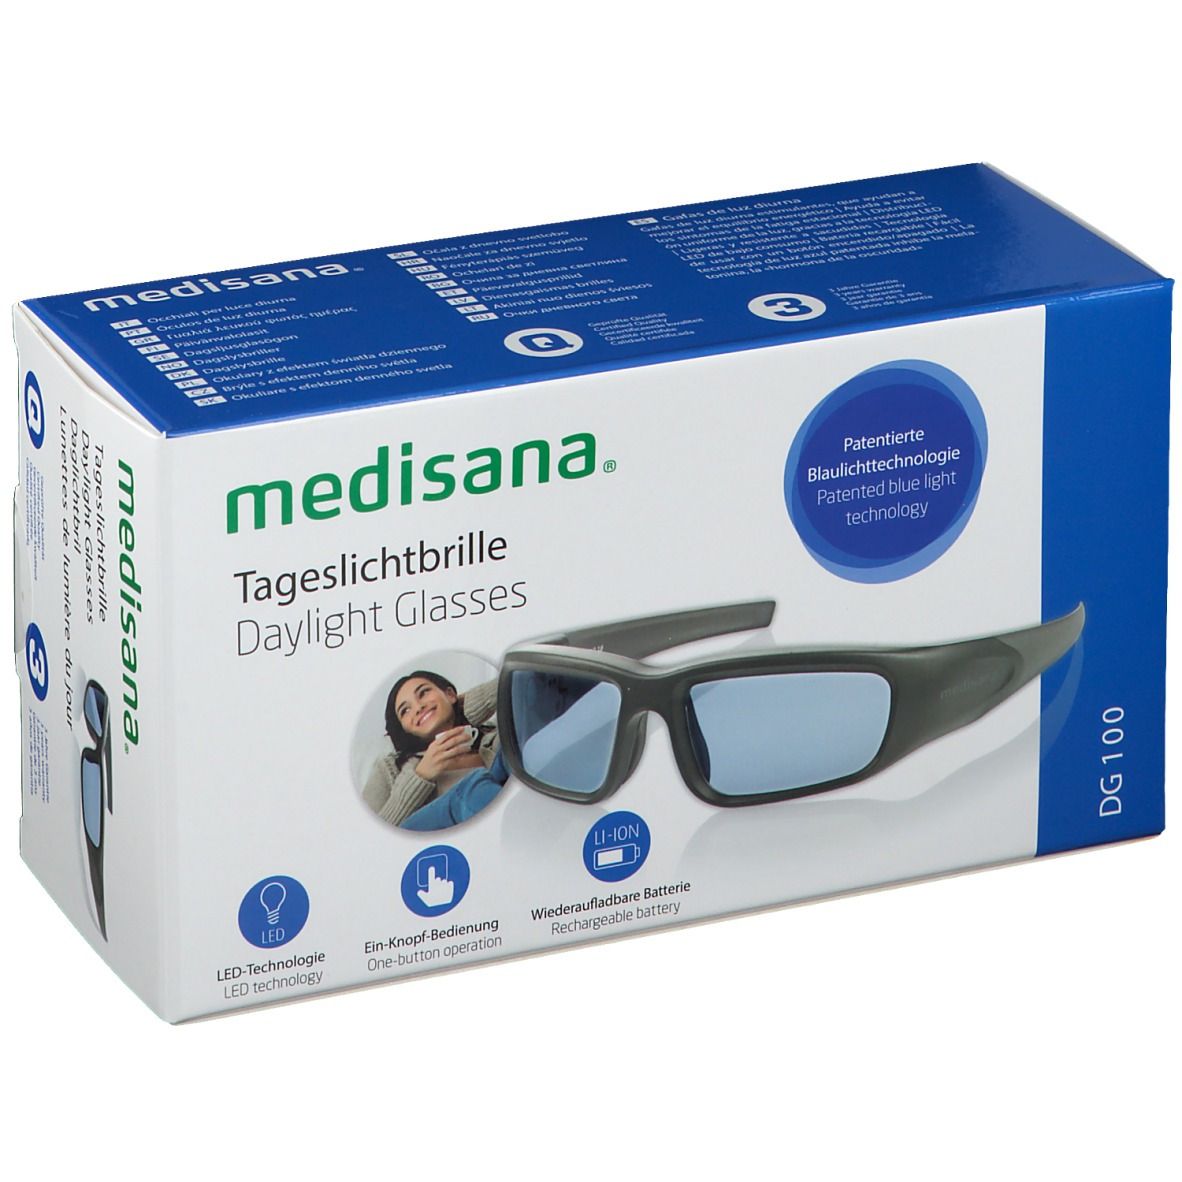 medisana® Tageslichtbrille Dg100